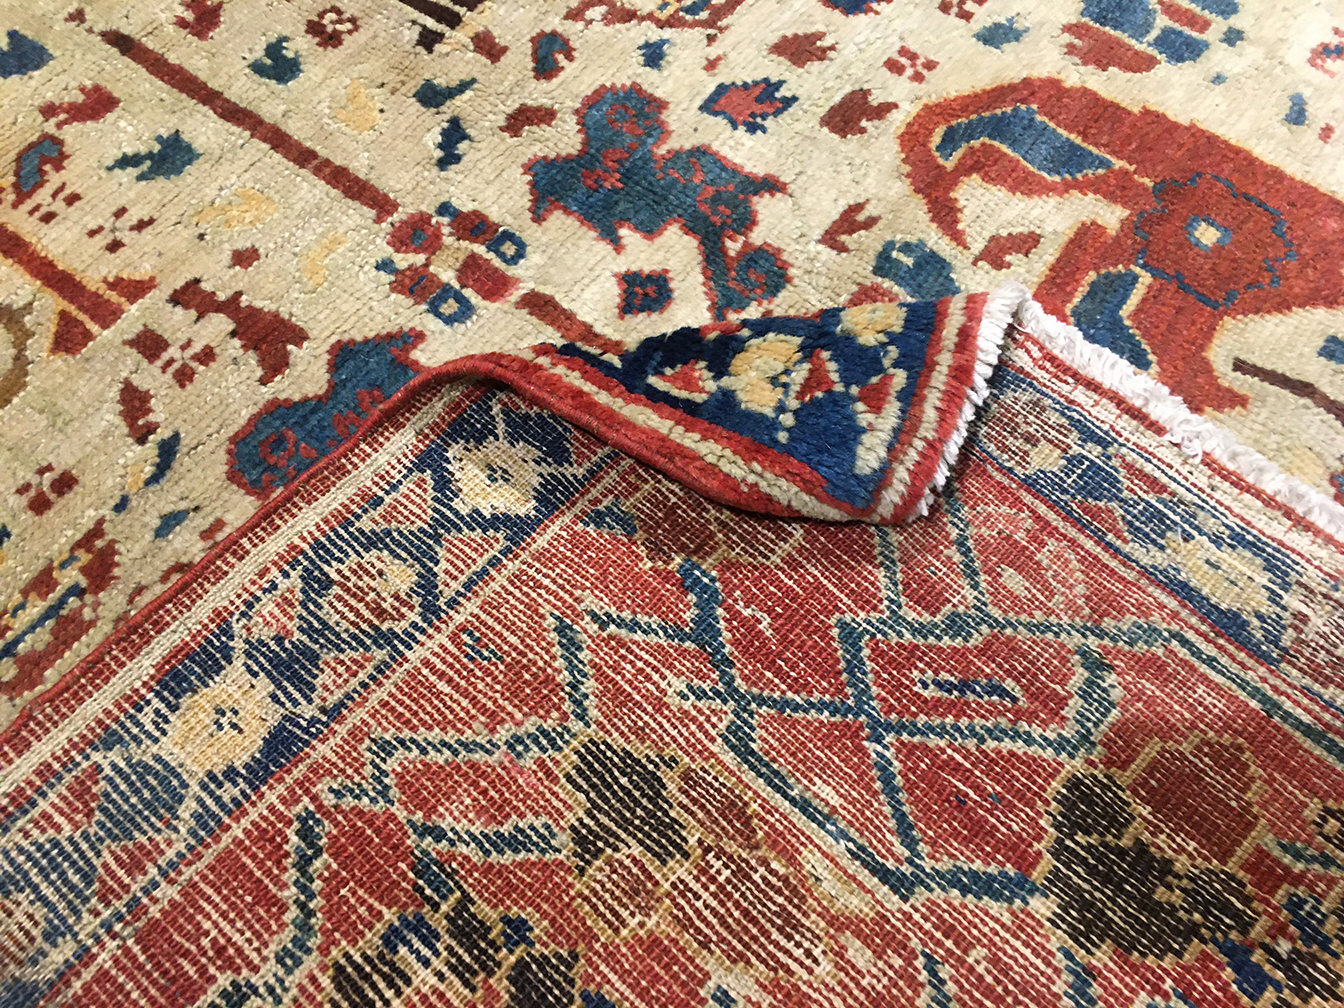 Antique bakshaish Carpet - # 55822